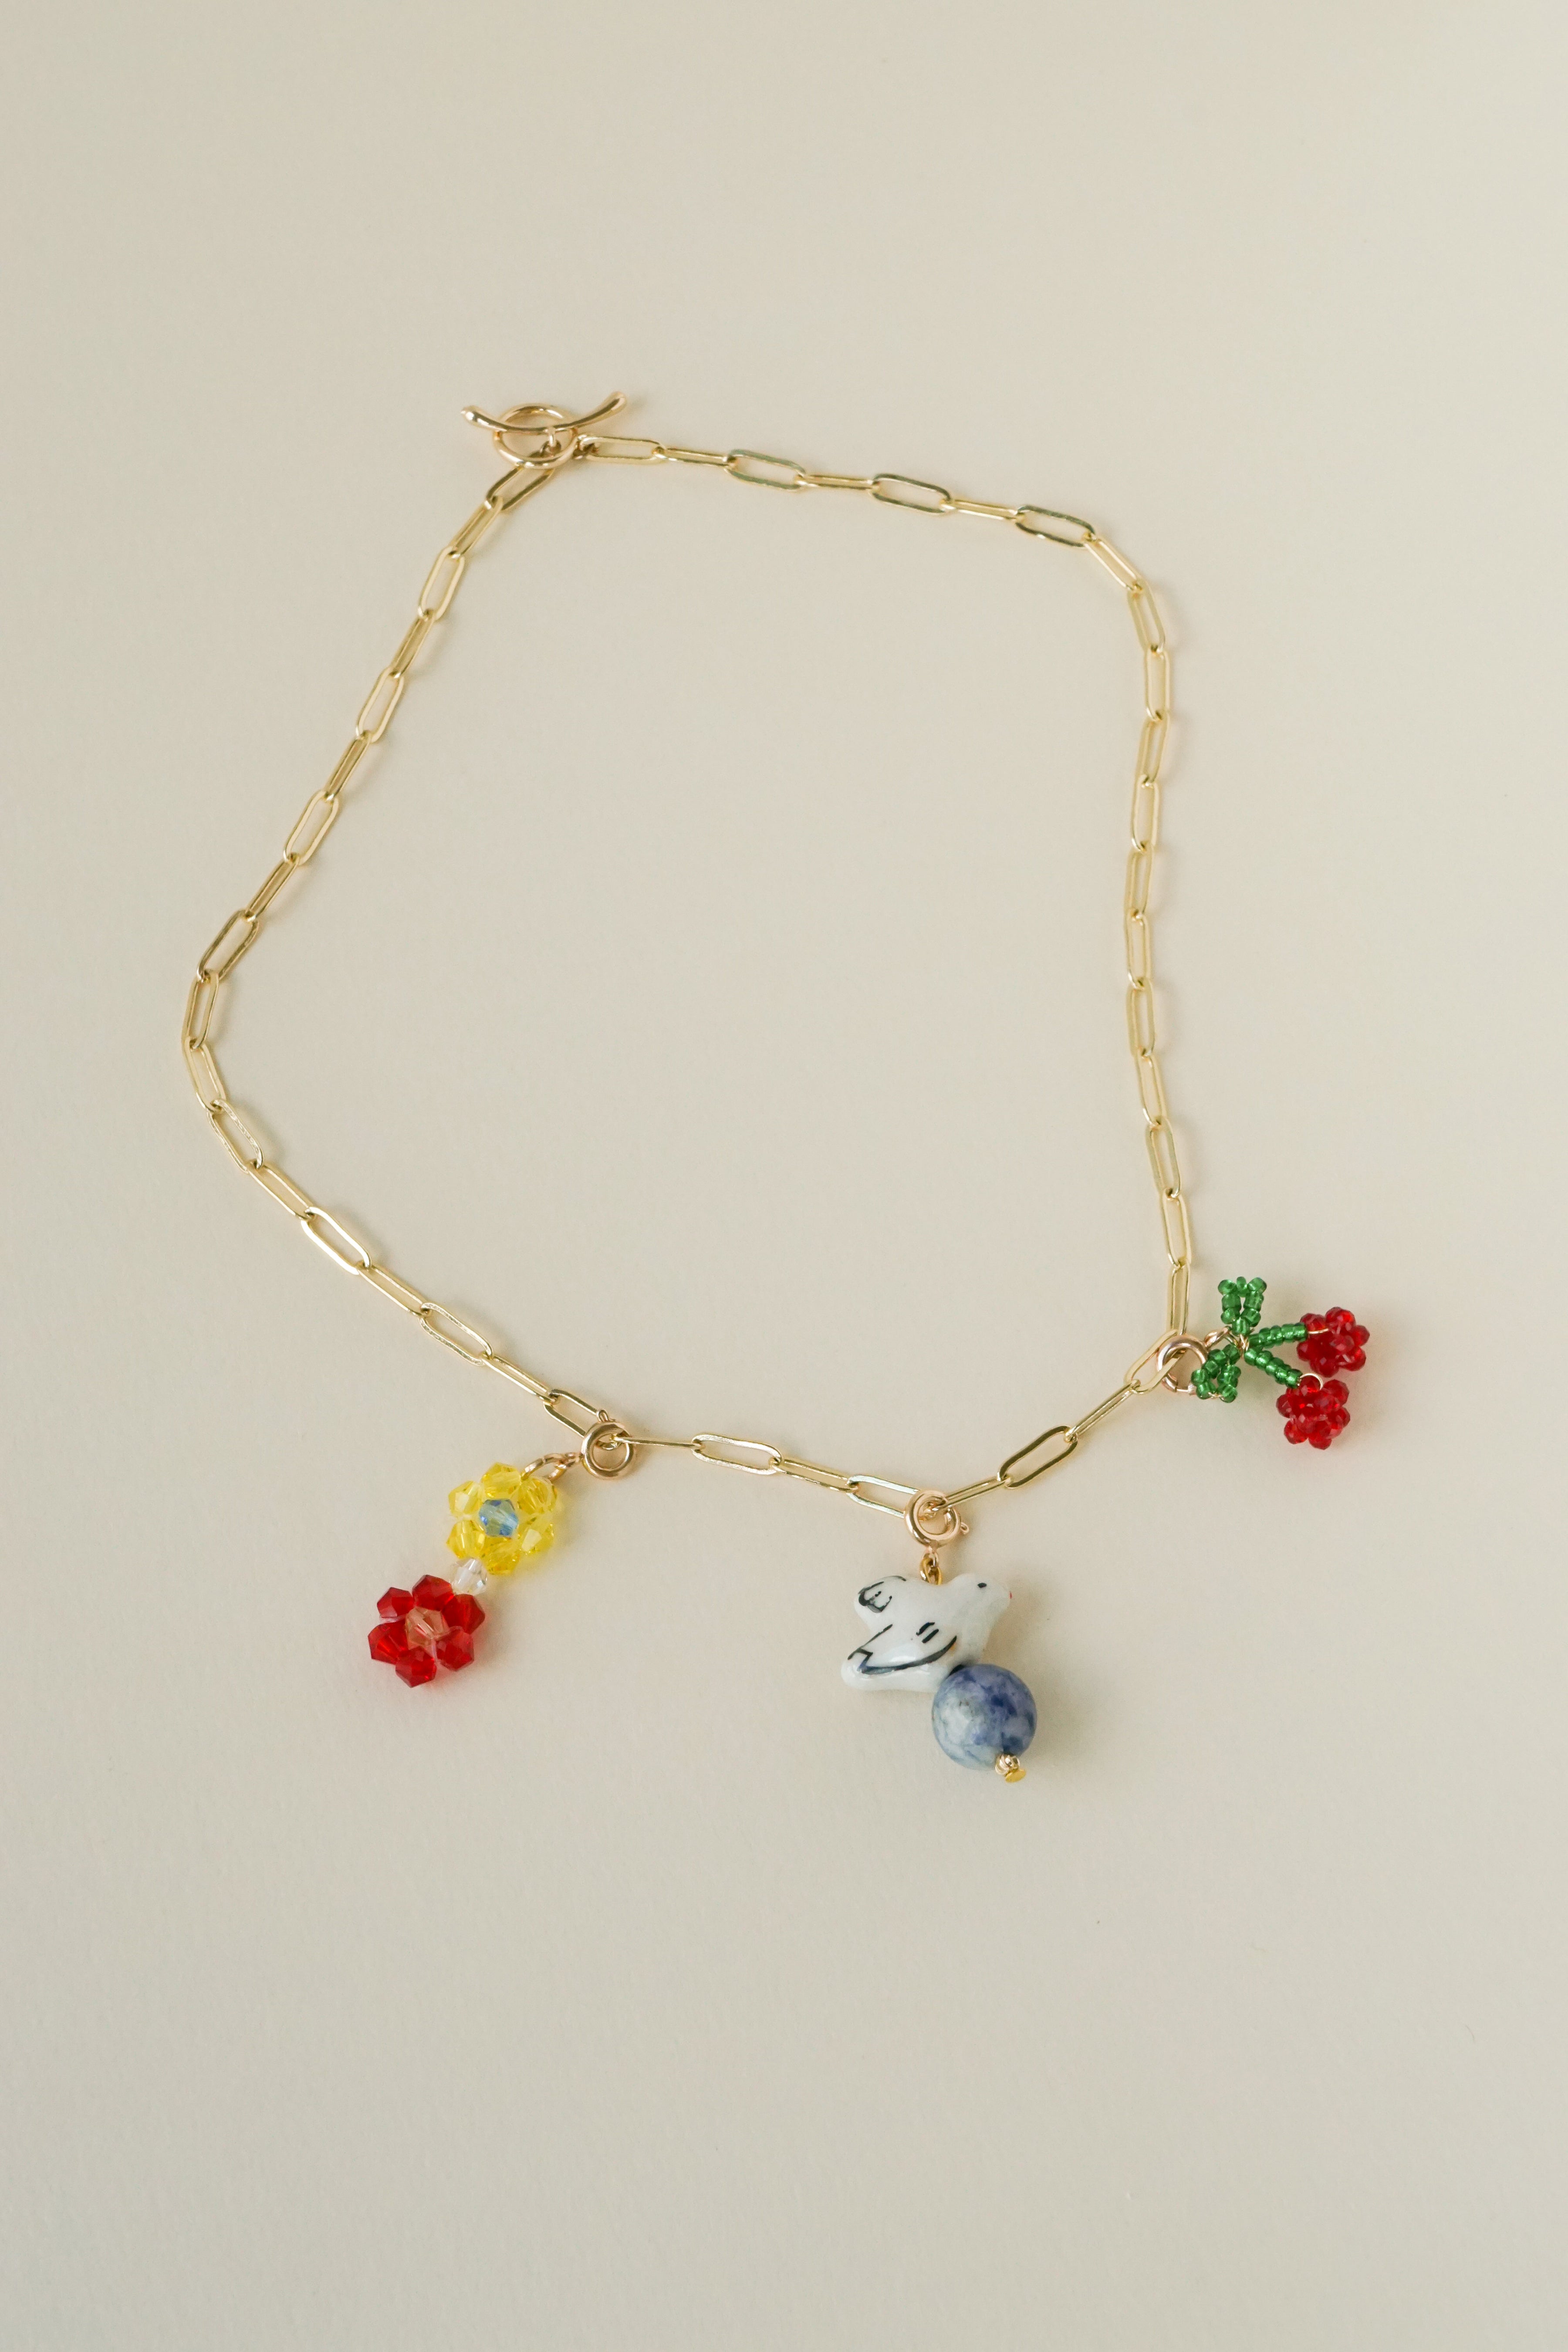 Paperclip Chain Necklace (Midi)